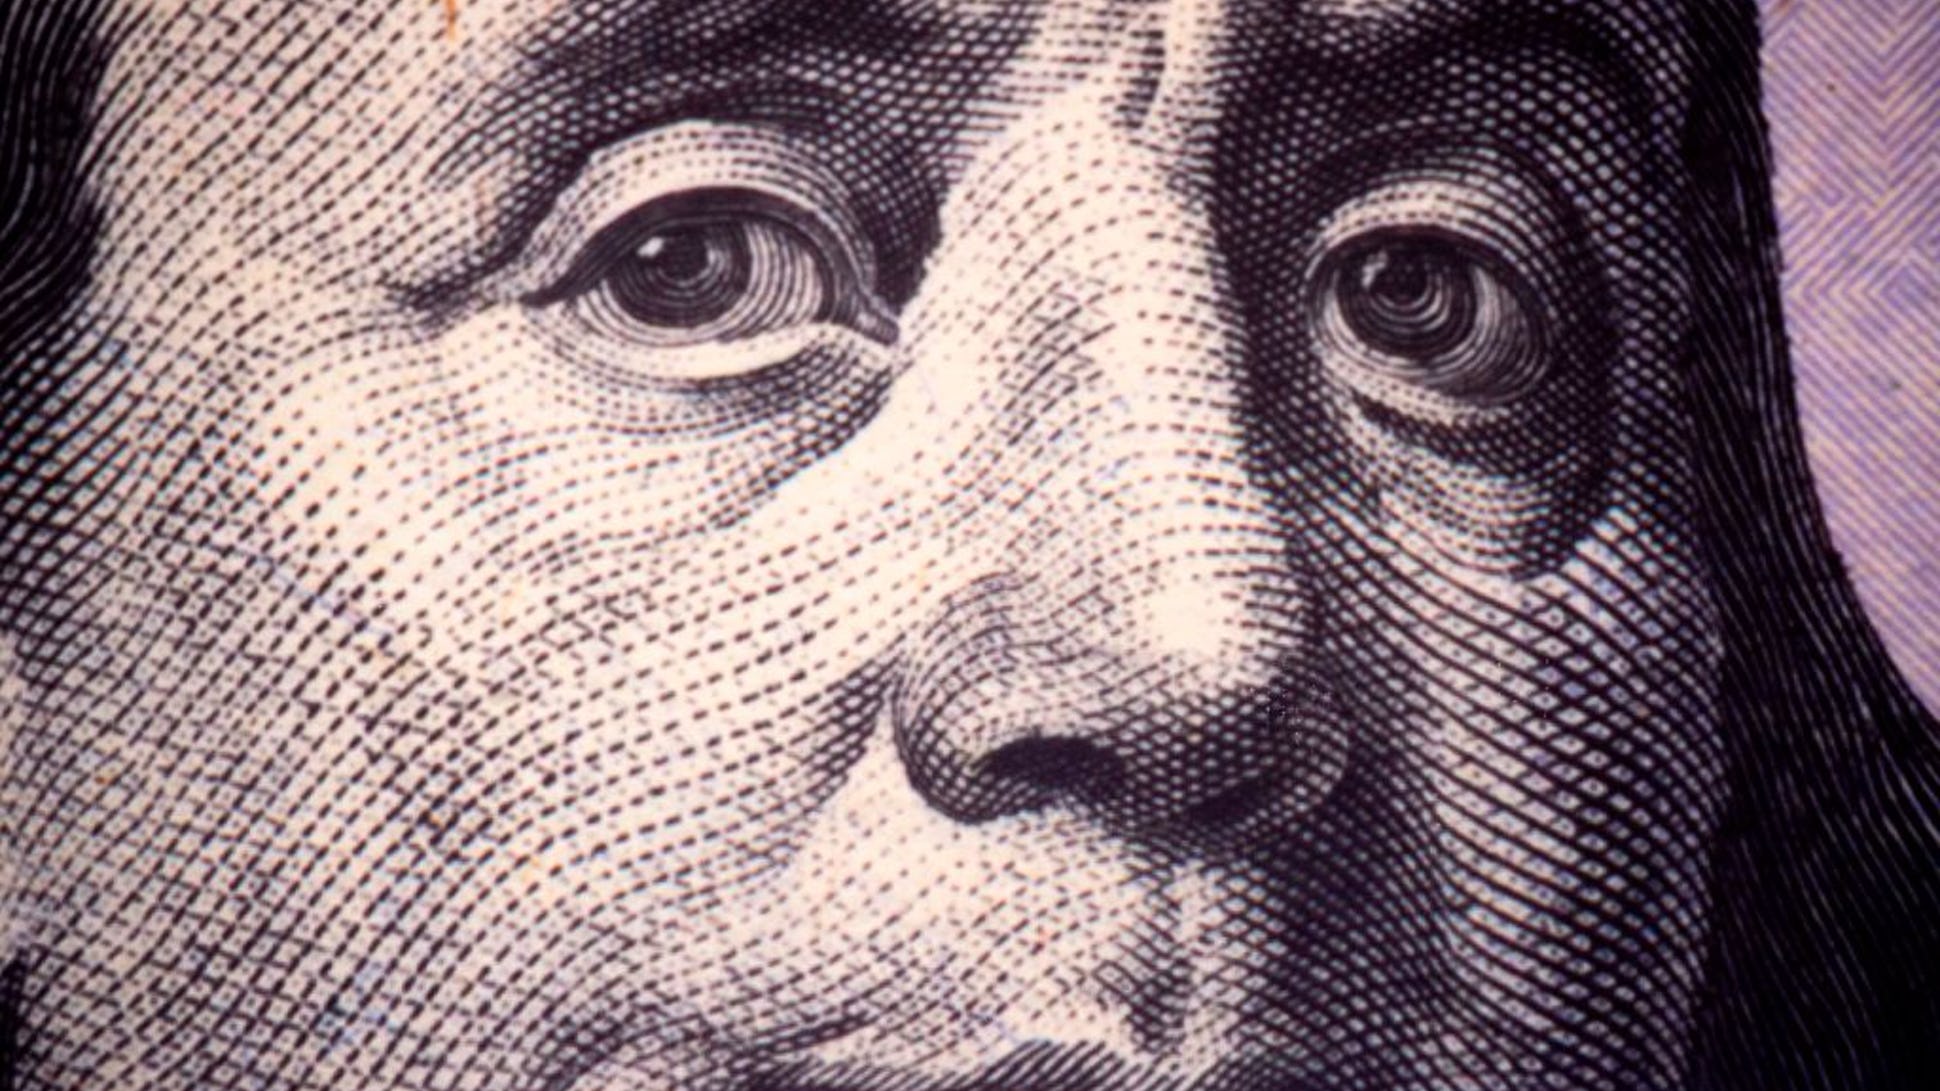 Franklin Face from $100 bill